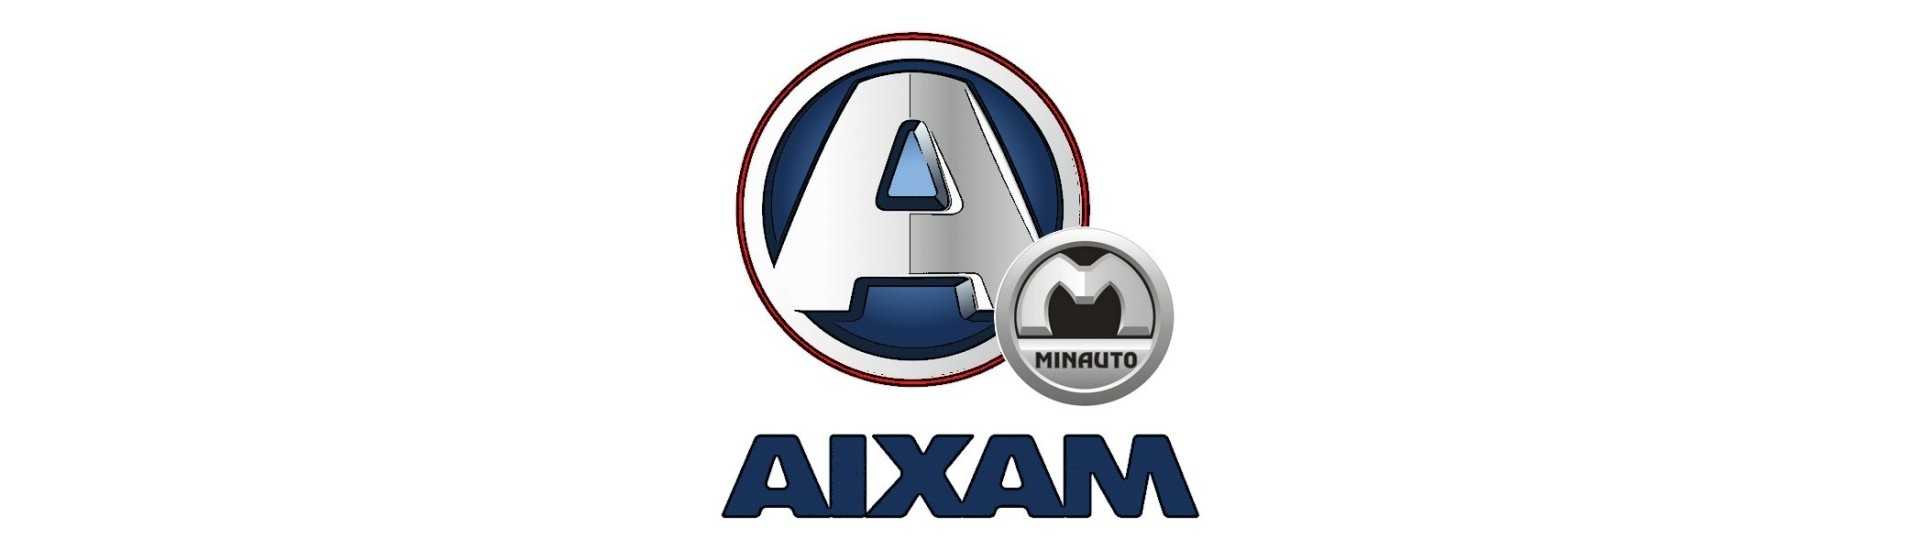 Adhesive-logo parhaalla hinnalla ilman lupaa Aixam Minauto